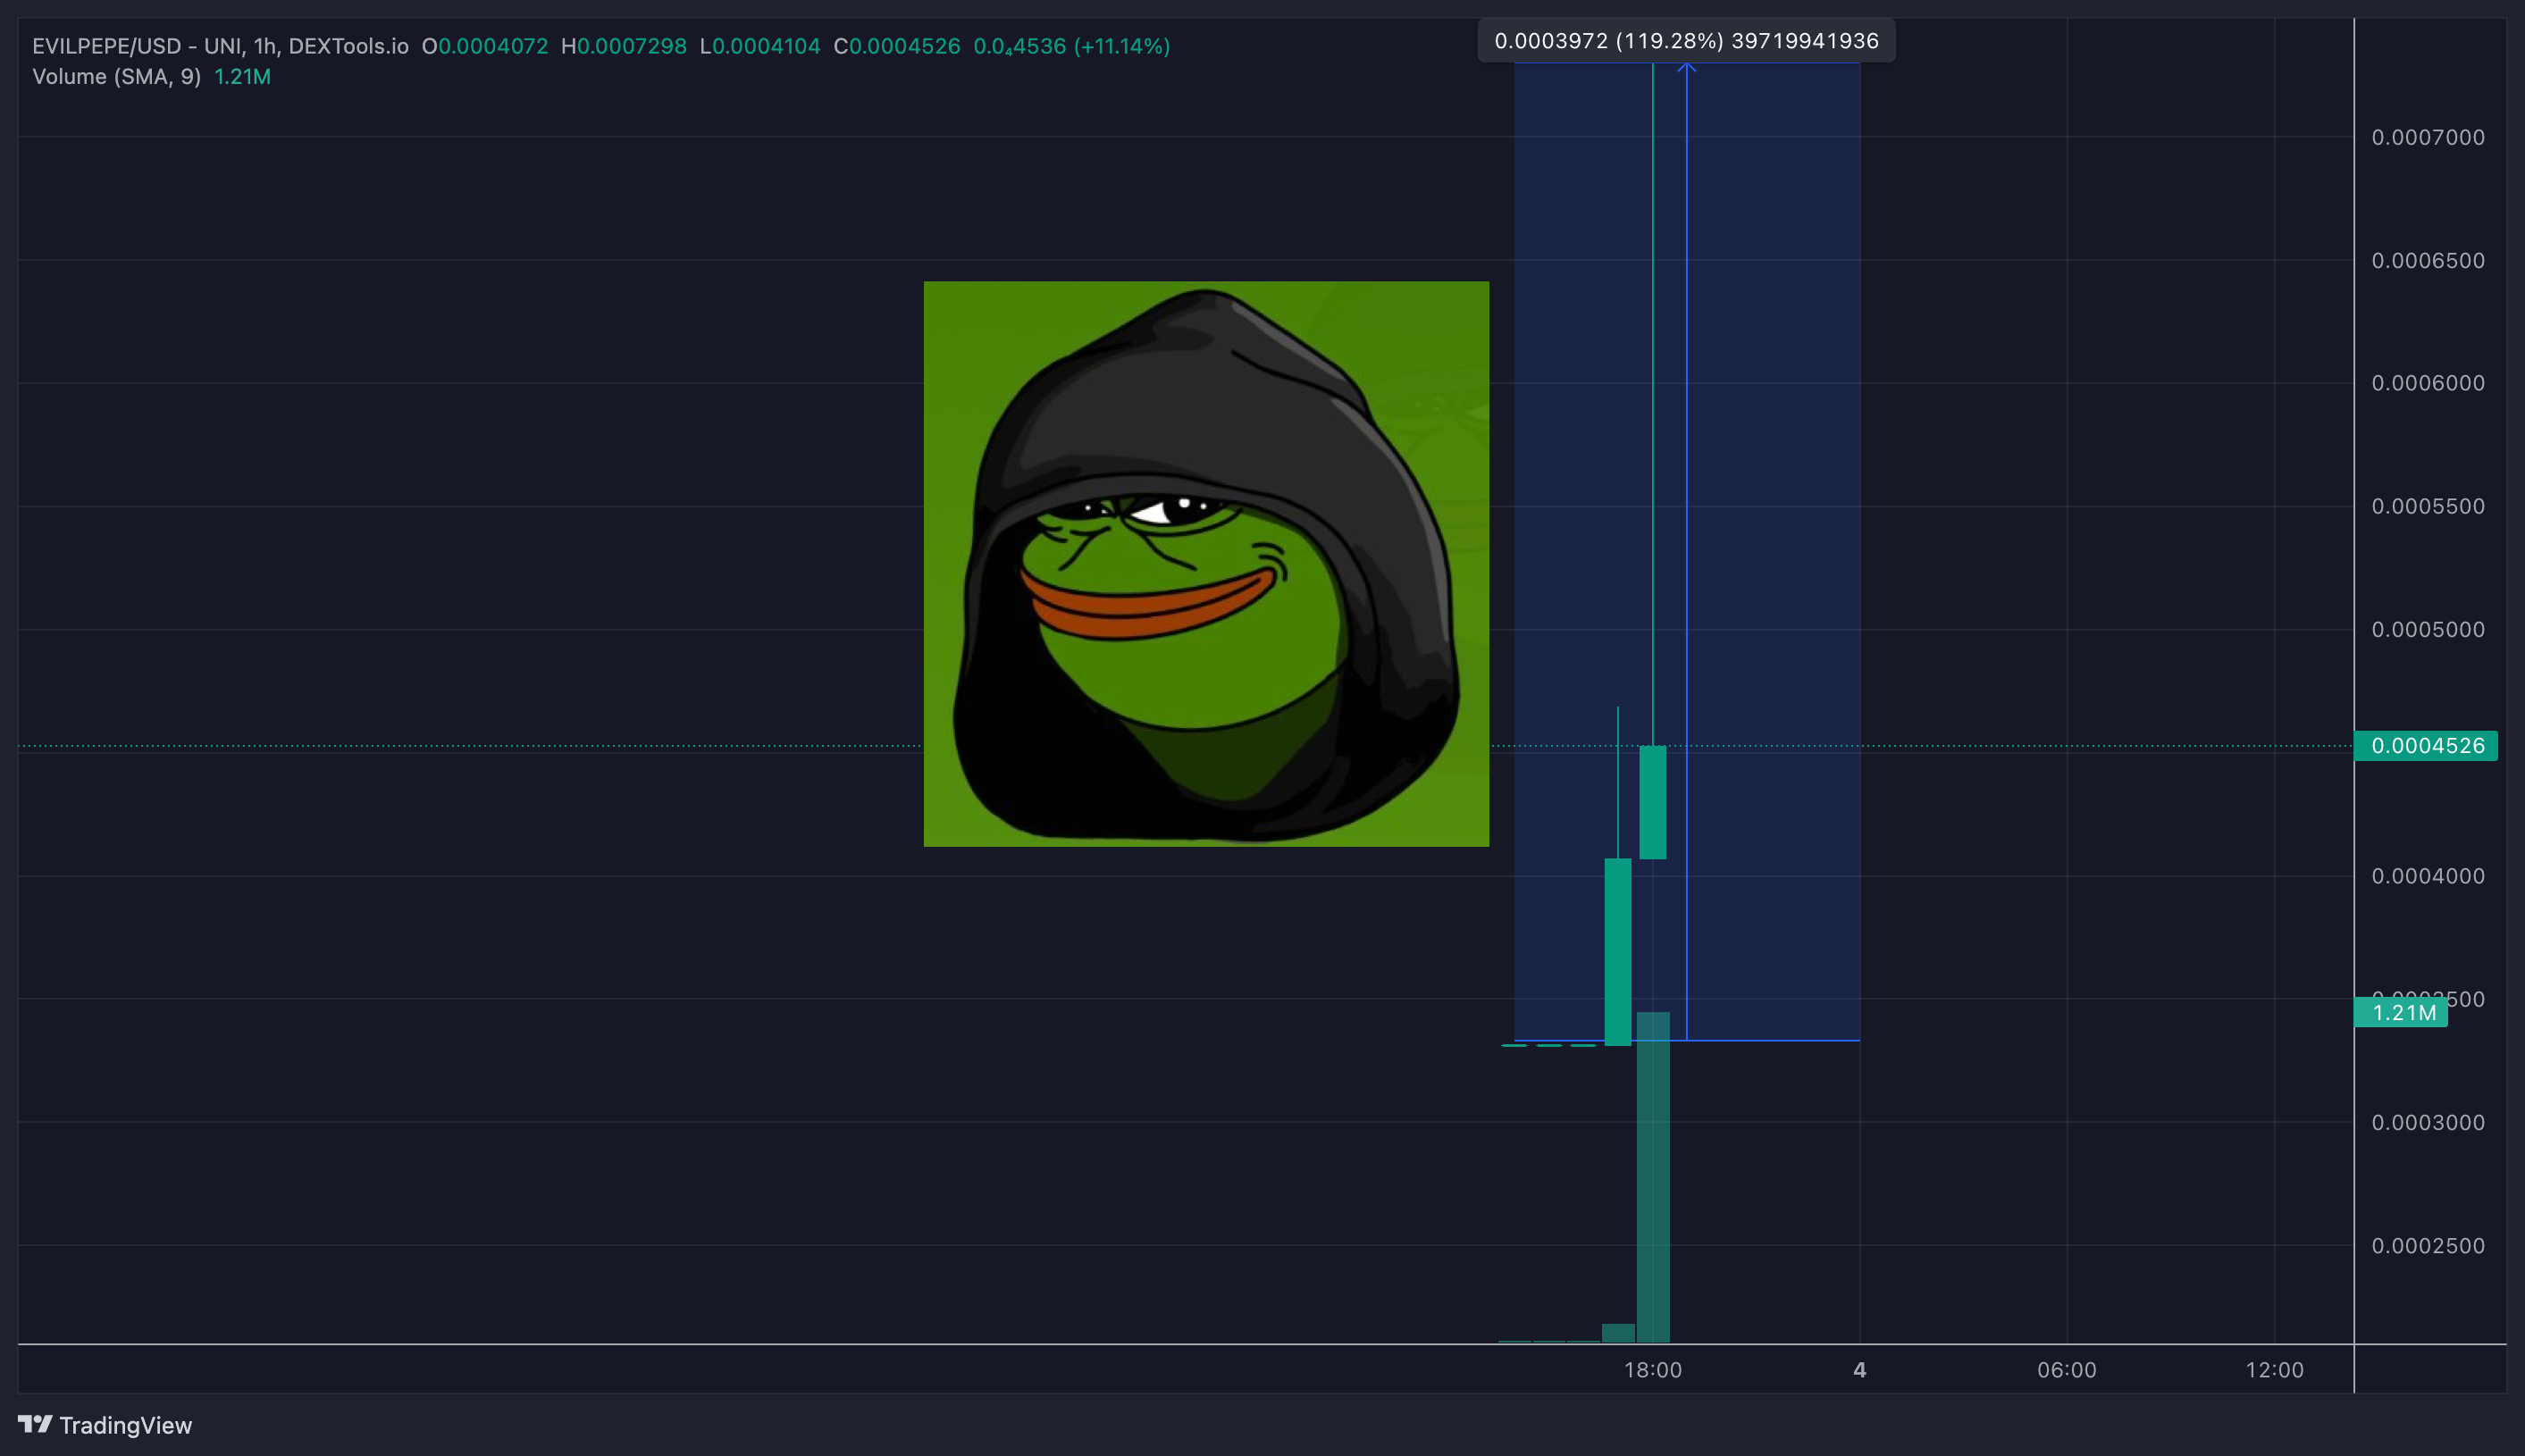 Evil Pepe Meme Coin pumpt 2x beim Launch; Handelsvolumen steigt in Minuten auf $1,6 Mio.- ist dies der nächste Pepe, 100x Gewinne im Anmarsch?